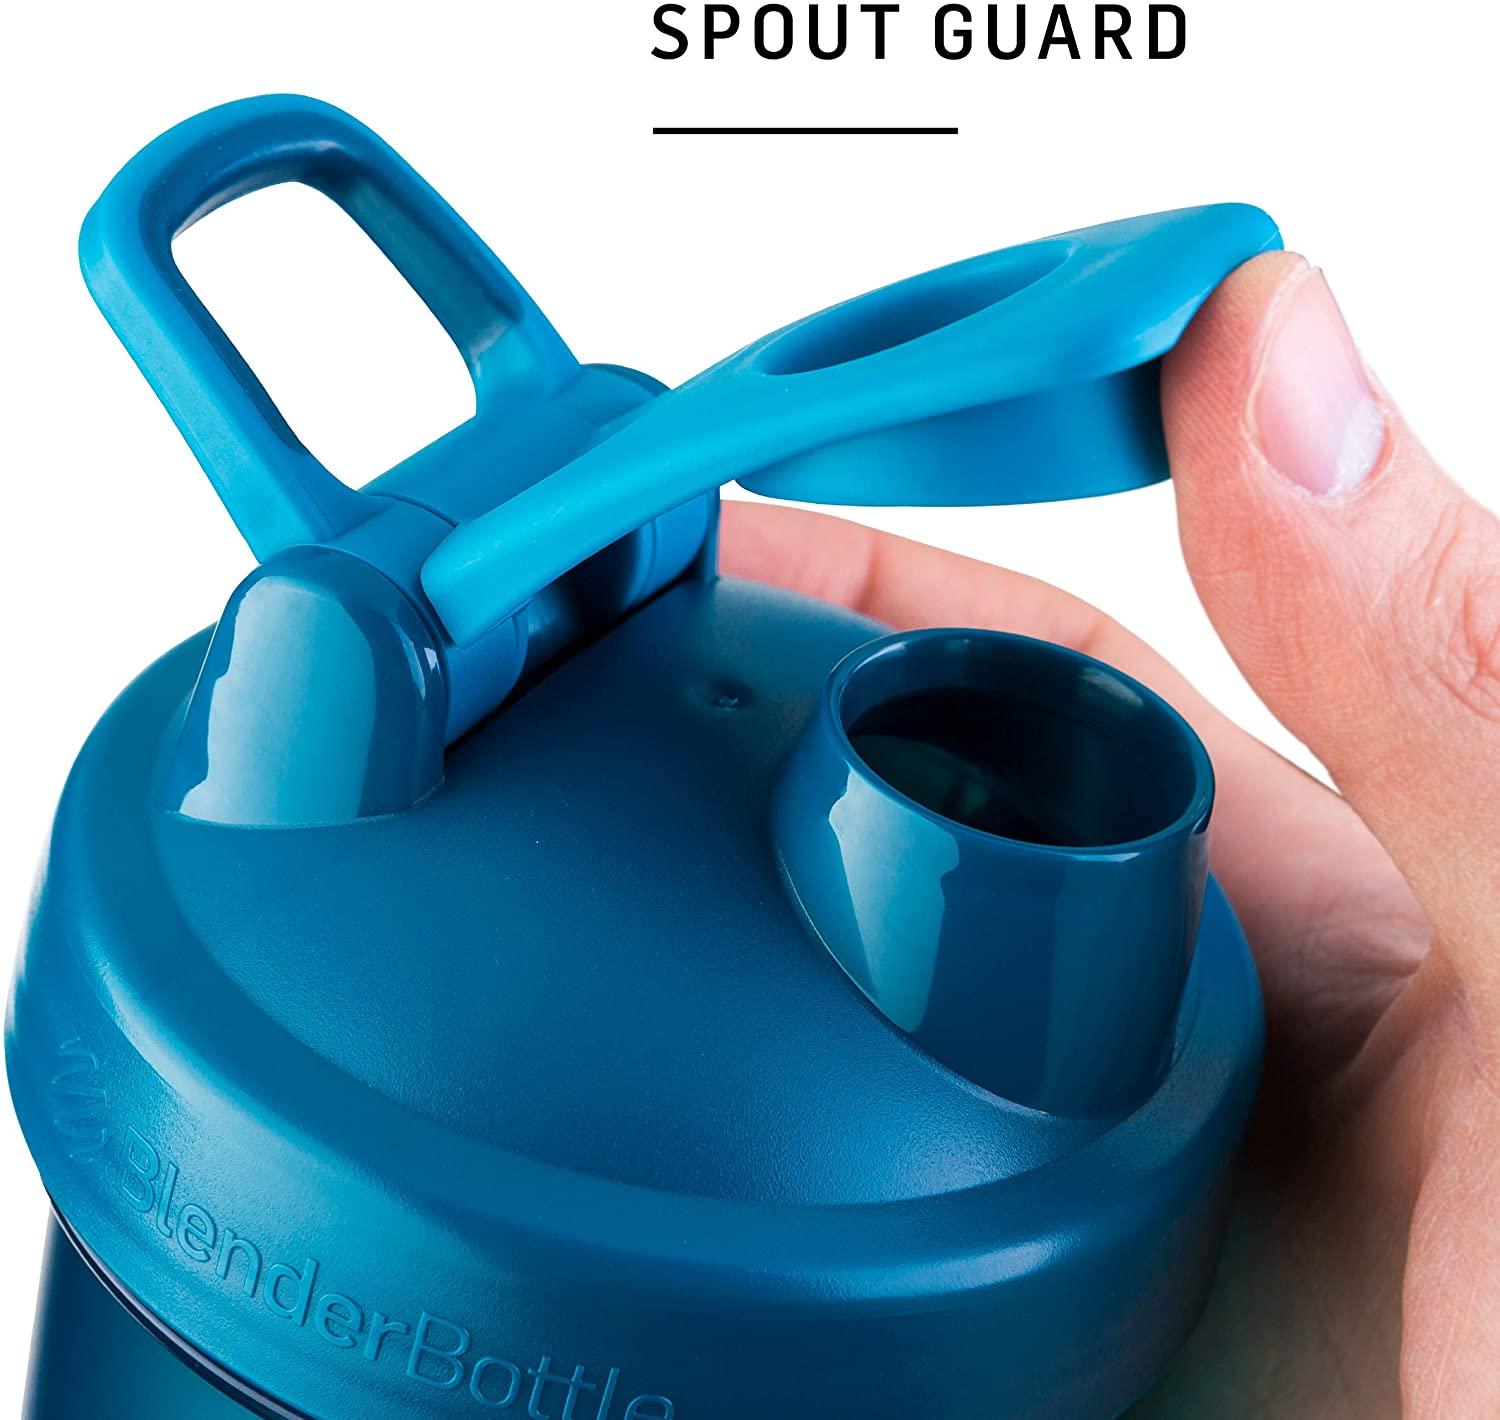 BlenderBottle SportMixer Tritan Grip Shaker Bottle, 20-Ounce Assorted –  BlenderBottle SEA